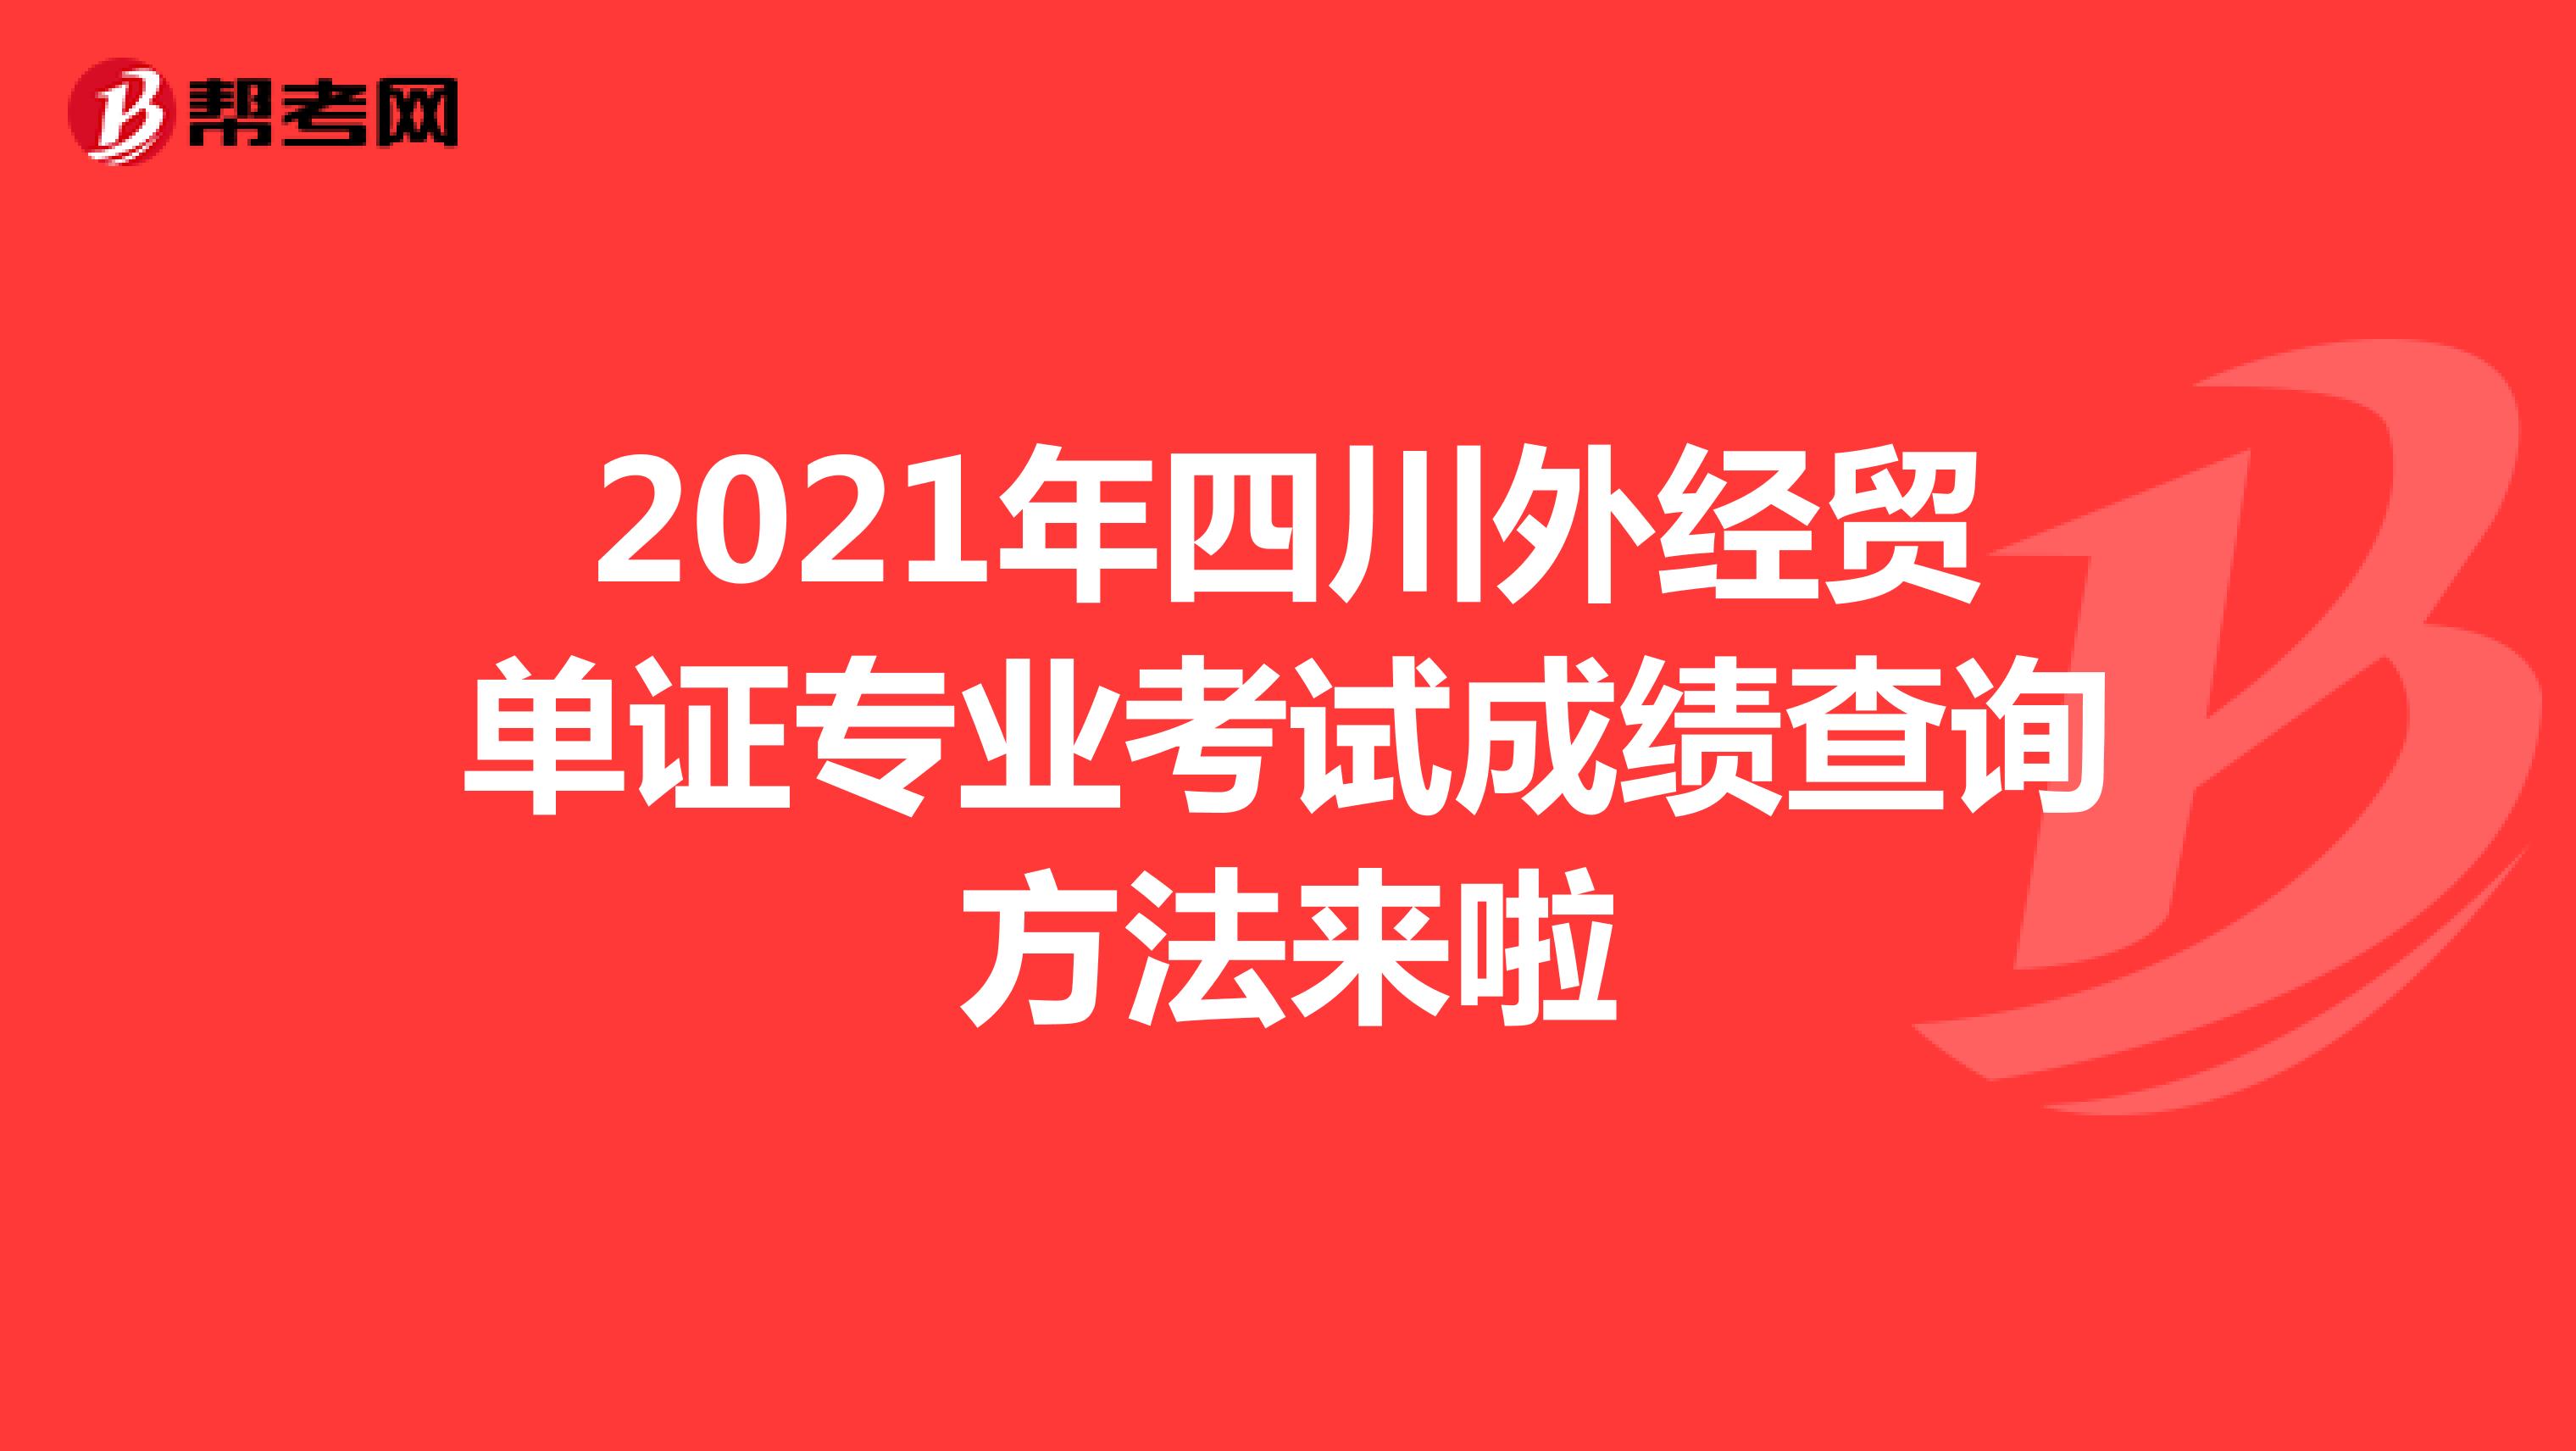 2021年四川外经贸单证专业考试成绩查询方法来啦